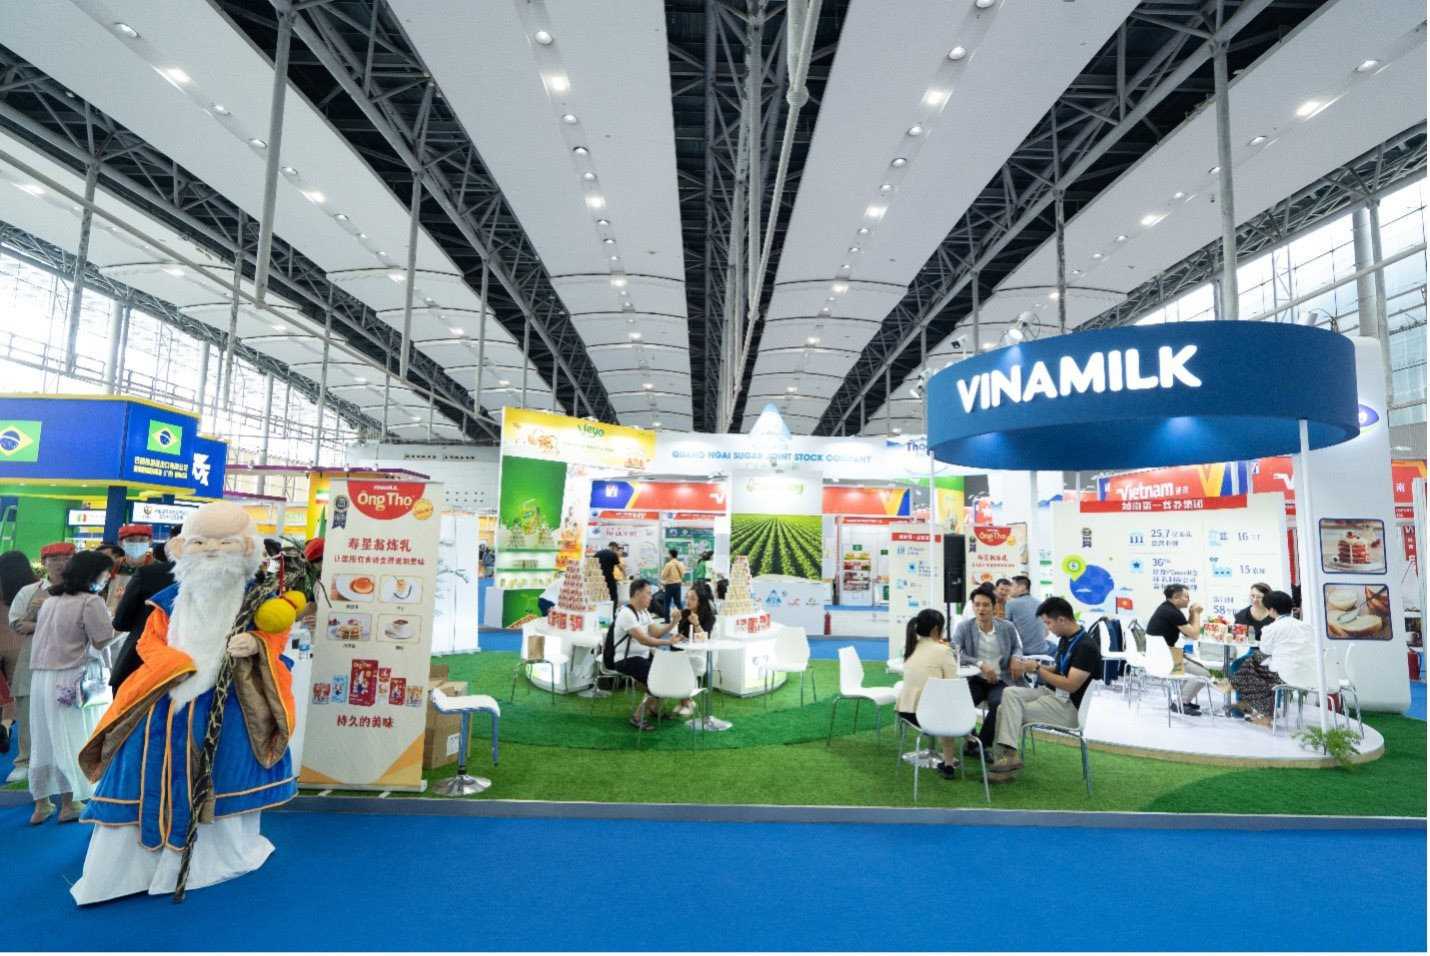 Sản phẩm “quốc dân” sữa đặc Ông Thọ (Vinamilk) gây ấn tượng tại thị trường tỷ dân Trung Quốc - Ảnh 1.